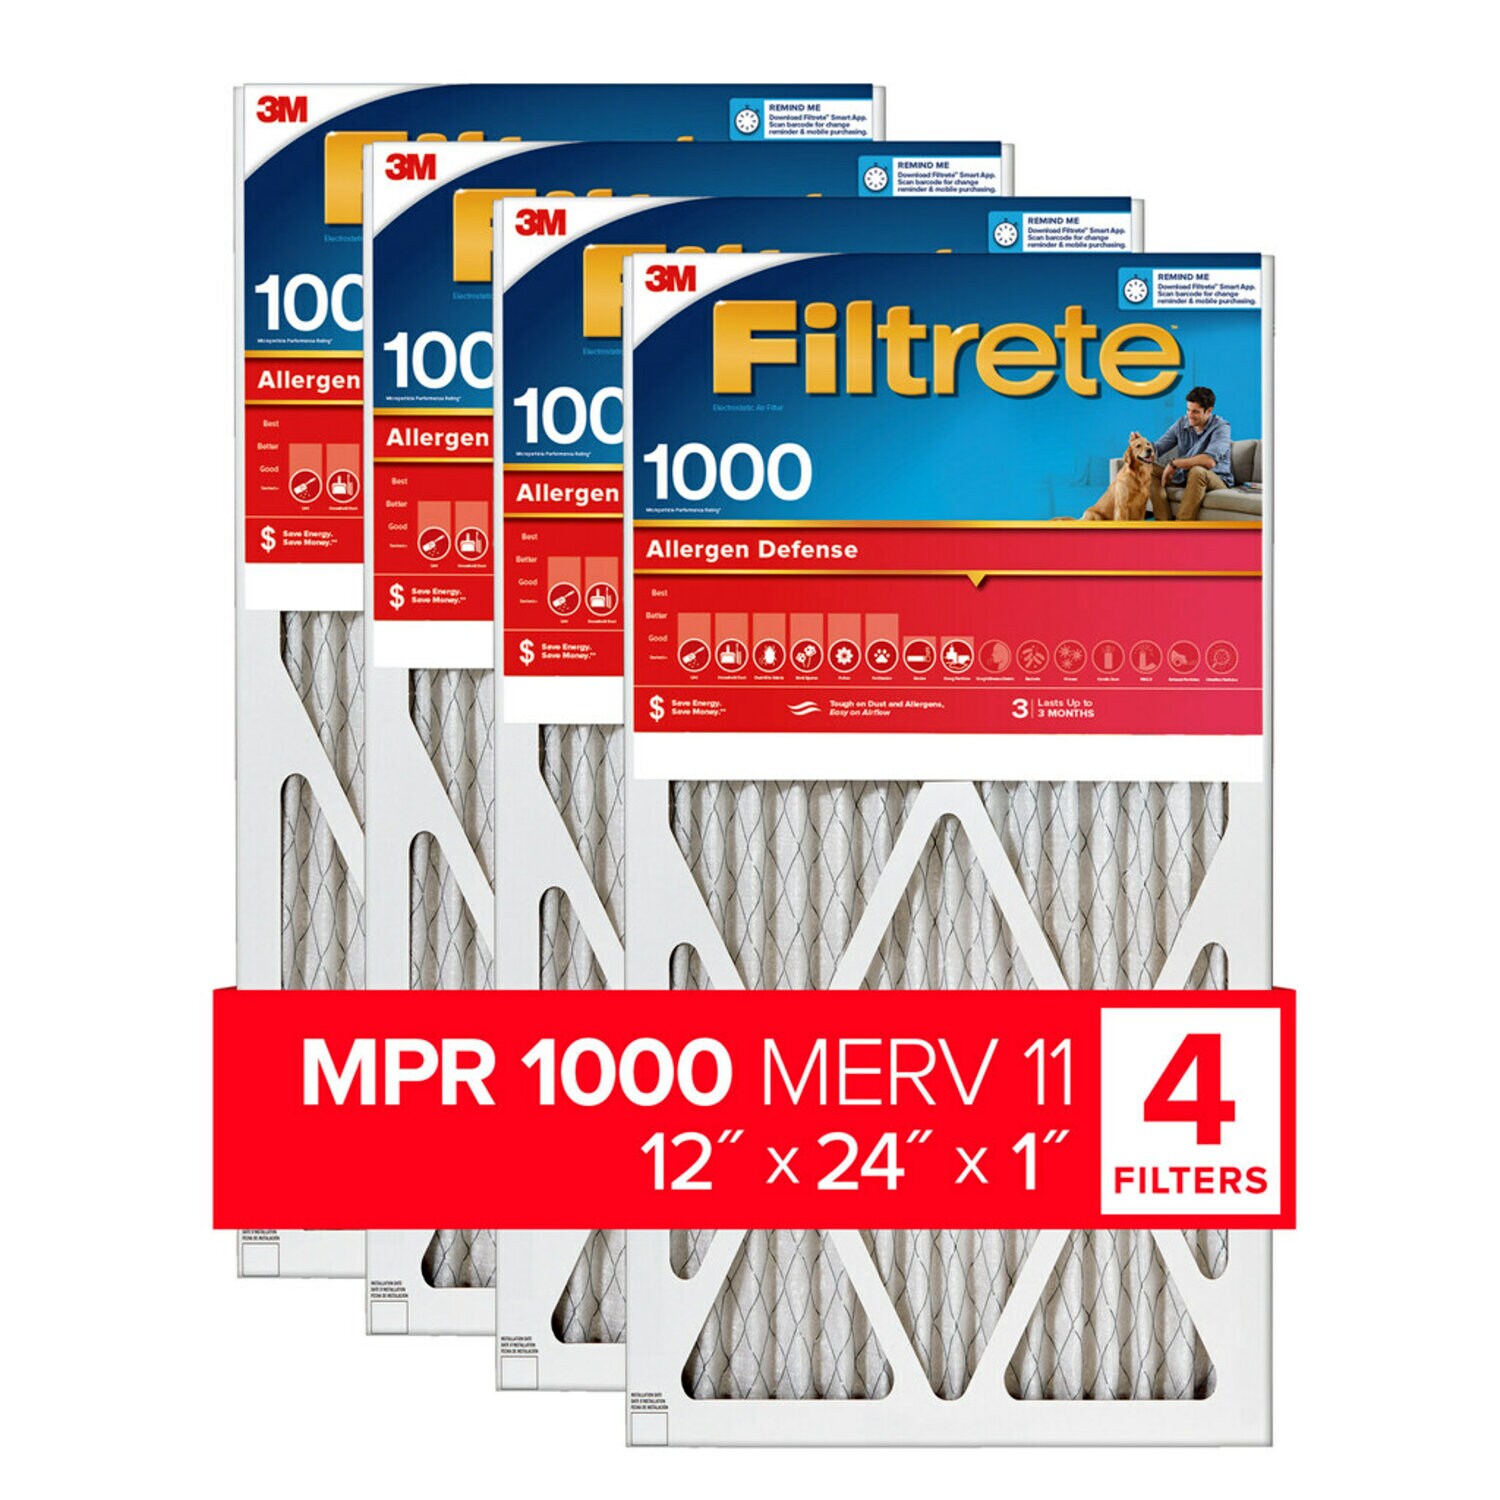 7100188875 - Filtrete Allergen Defense Air Filter, 1000 MPR, 9820-4, 12 in x 24 in x 1 in (30,4 cm x 60,9 cm x 2,5 cm)